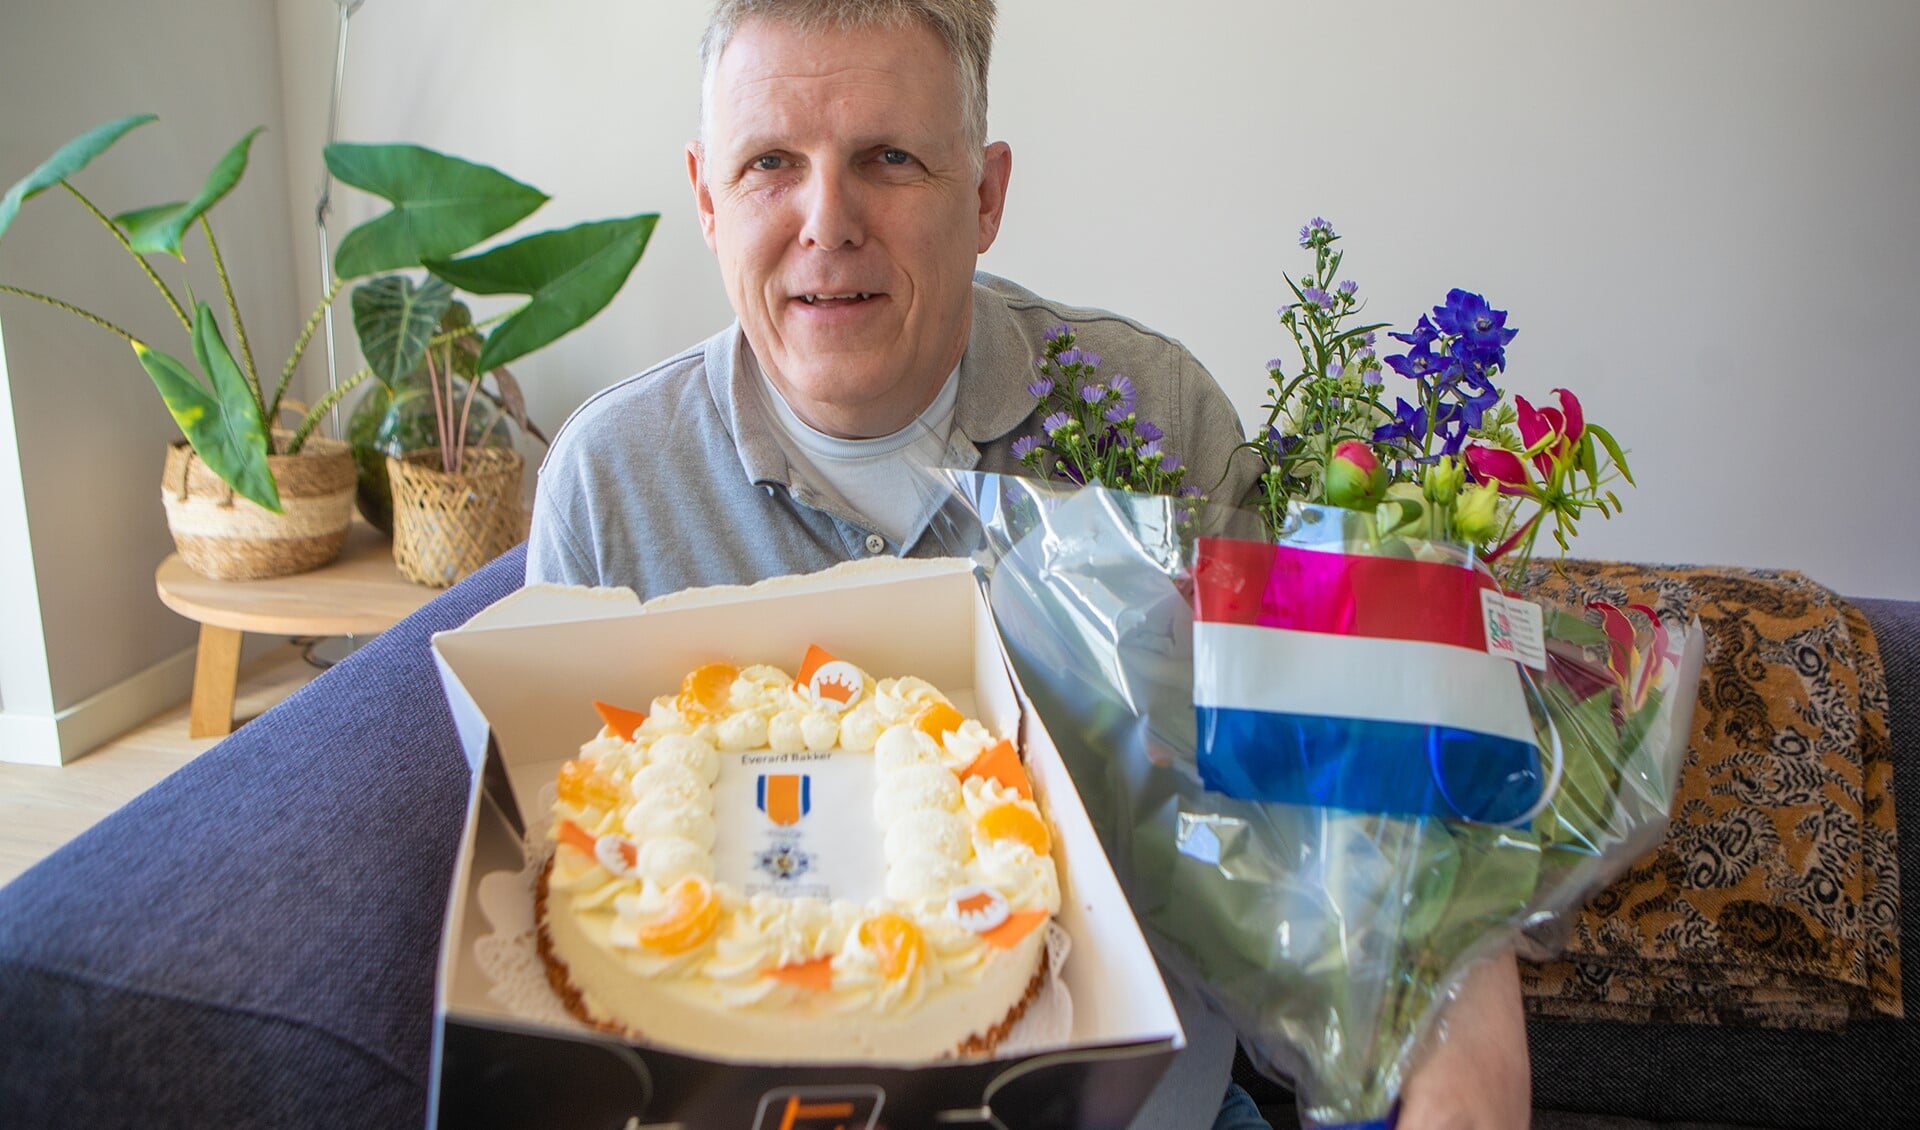 De heer Bakker met de bos bloemen en taart die hij kreeg van de gemeente vanwege zijn koninklijke onderscheiding.